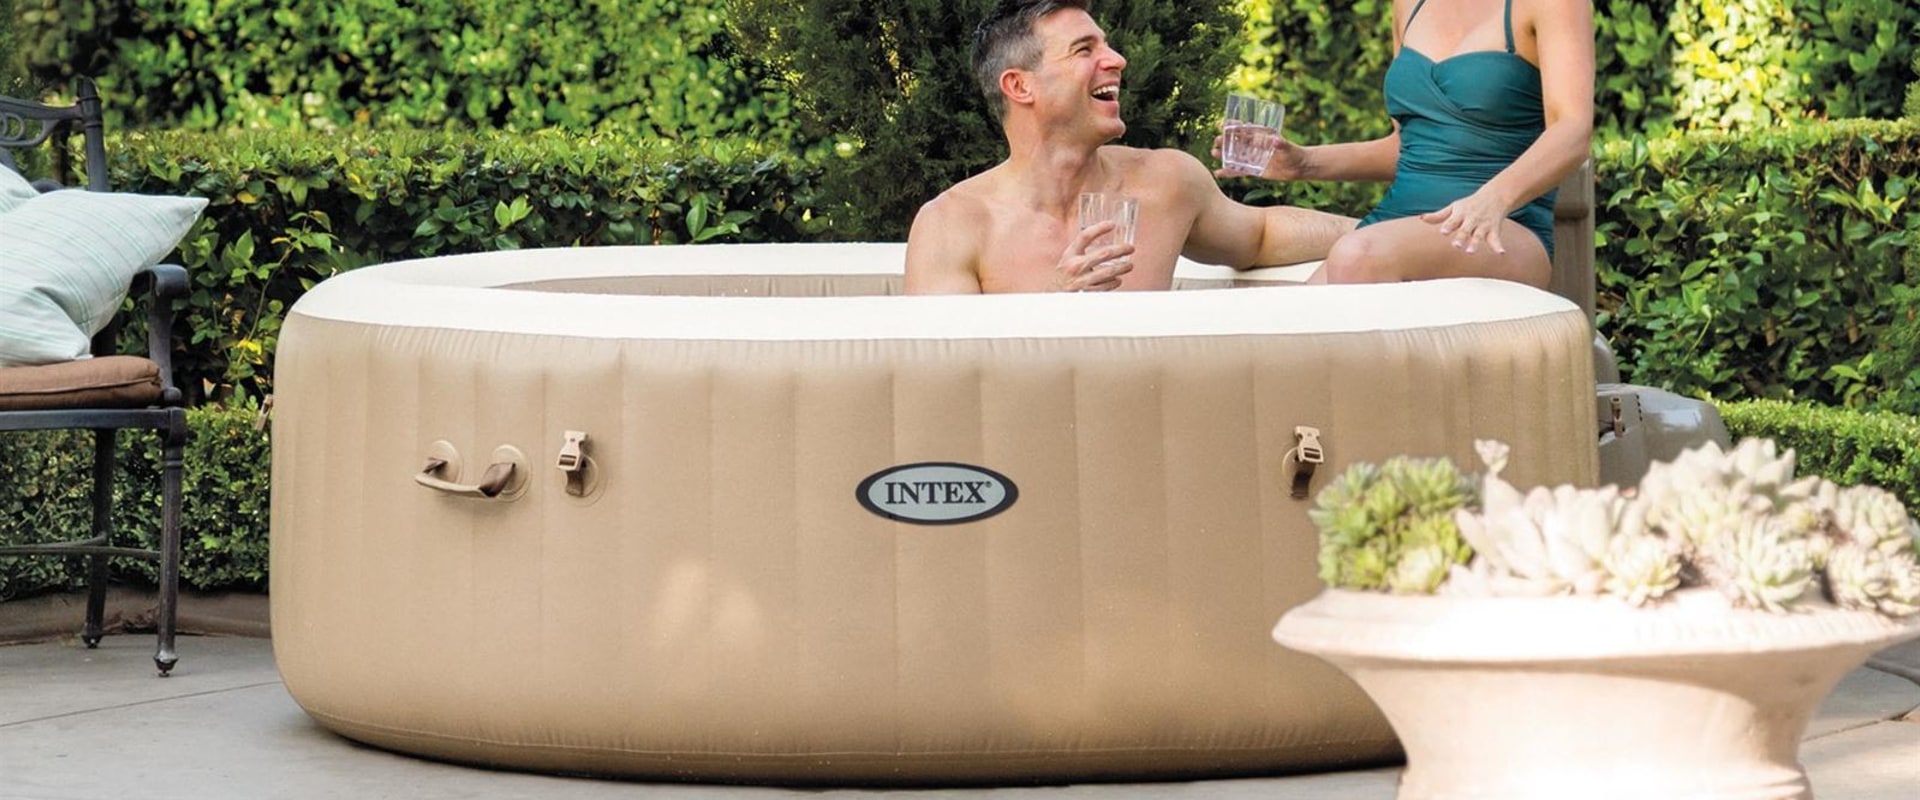 Kun je de hele tijd een opblaasbare hot tub laten staan?